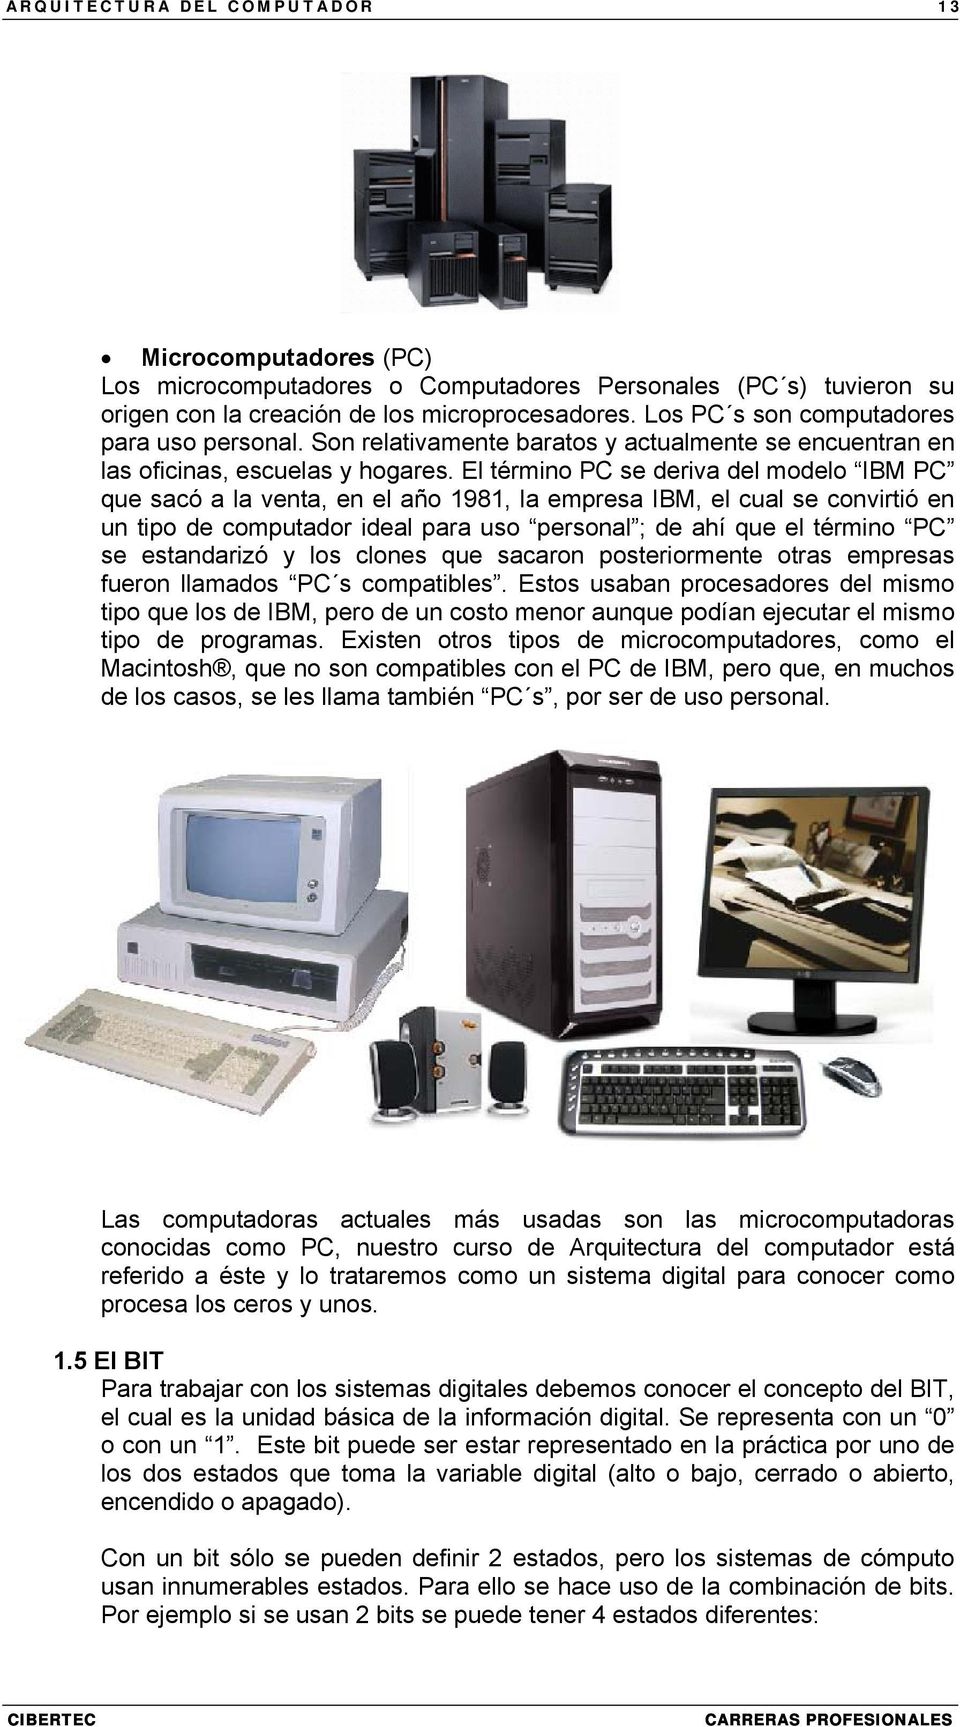 El término PC se deriva del modelo IBM PC que sacó a la venta, en el año 1981, la empresa IBM, el cual se convirtió en un tipo de computador ideal para uso personal ; de ahí que el término PC se